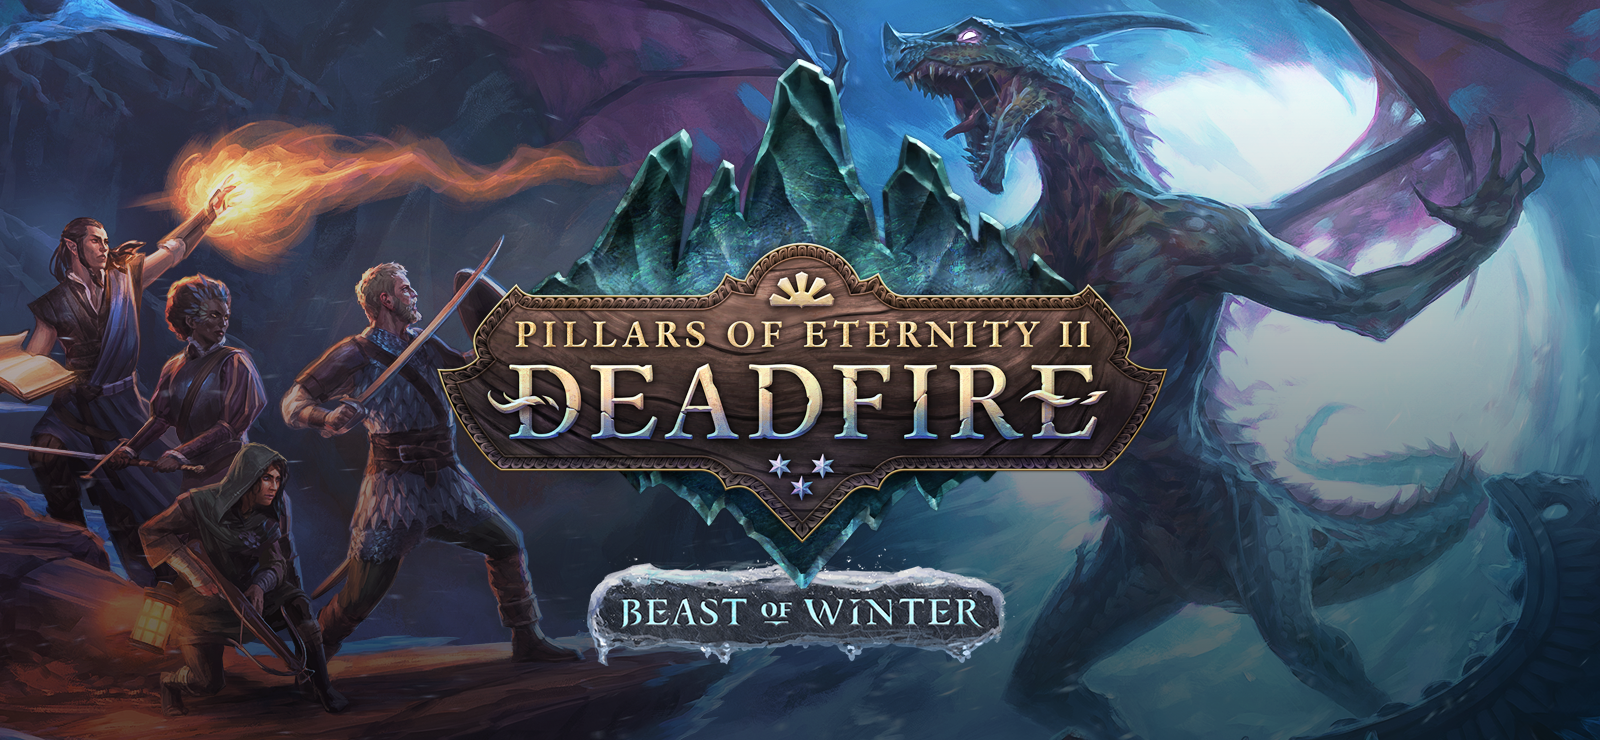 Pillars Of Eternity II: Deadfire - The Beast Of Winter